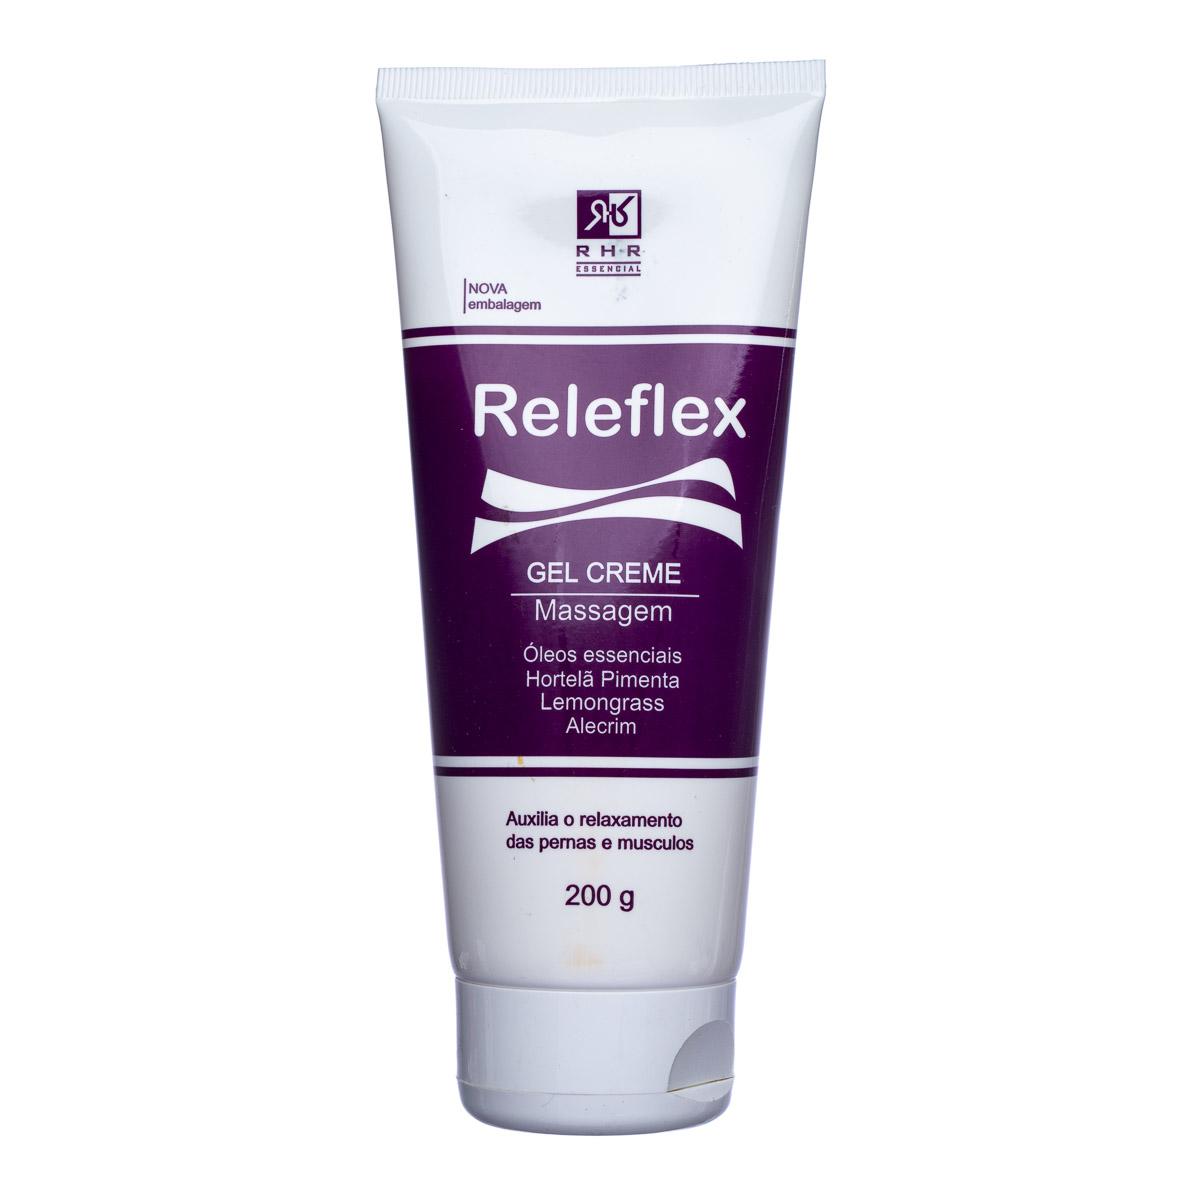 Gel Creme Relaxante ReleFlex 200g - RHR